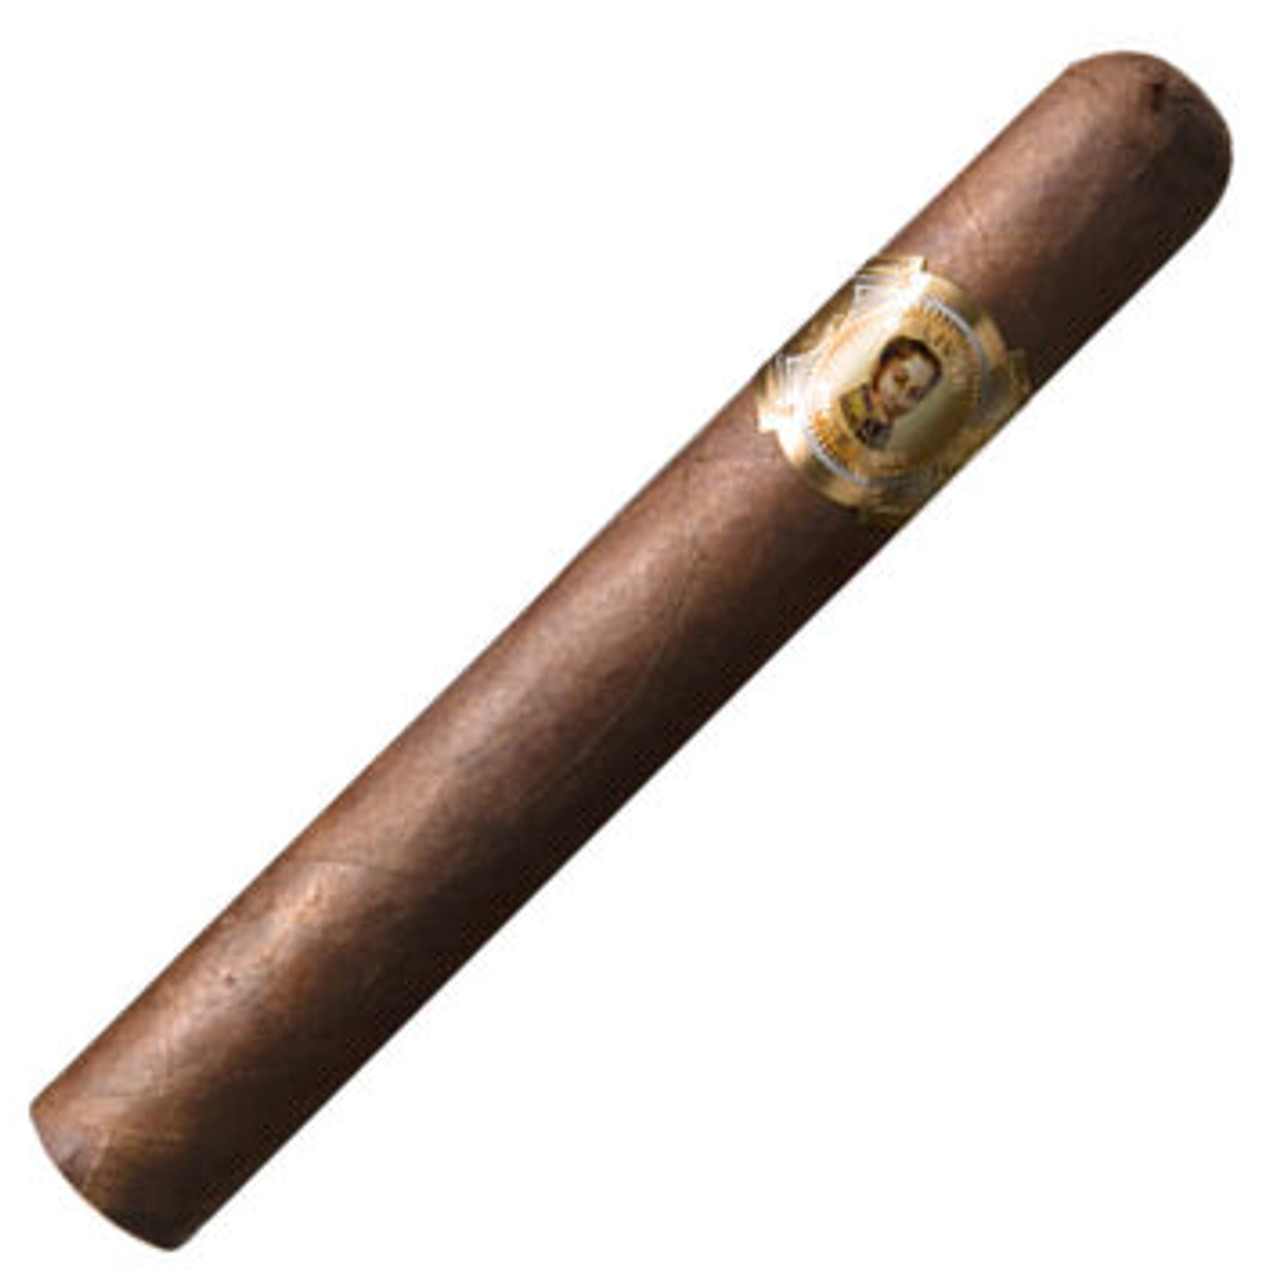 Bolivar Cofradia No. 654 Oscuro Cigars - 6 x 54 Single